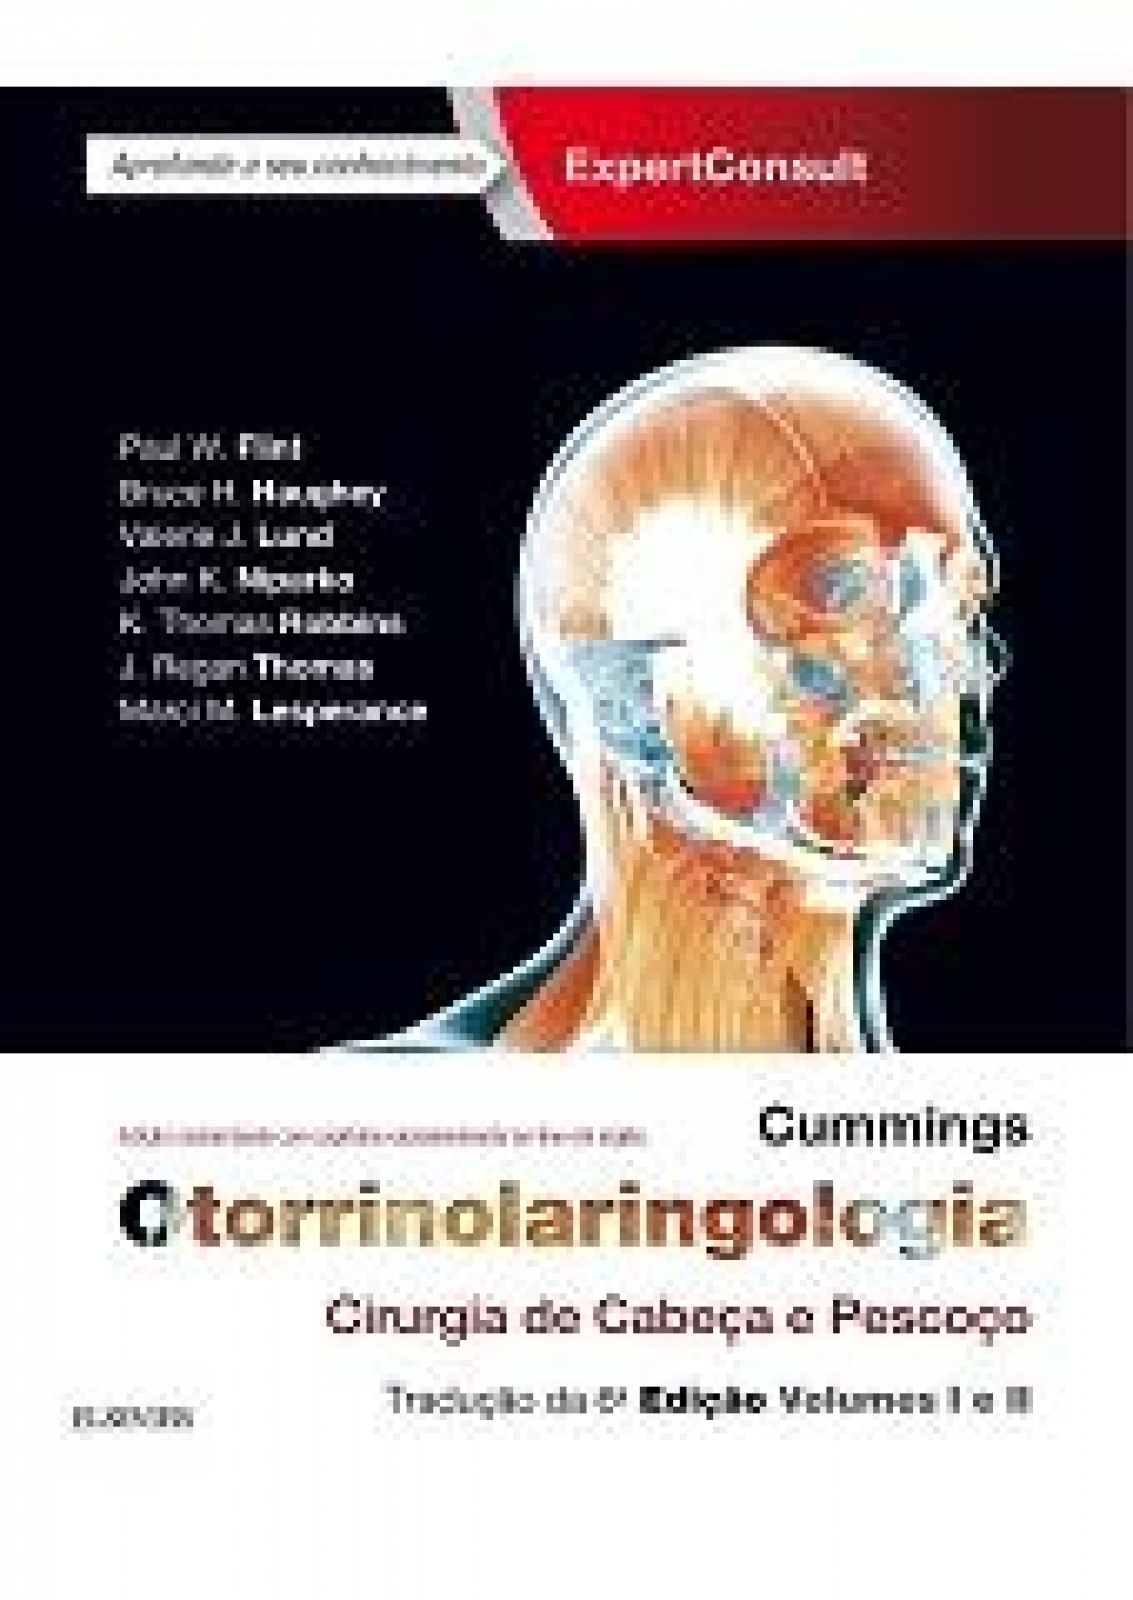 Cummings Otorrinolaringologia - 6ª Edição Cirurgia De Cabeca E Pescoco